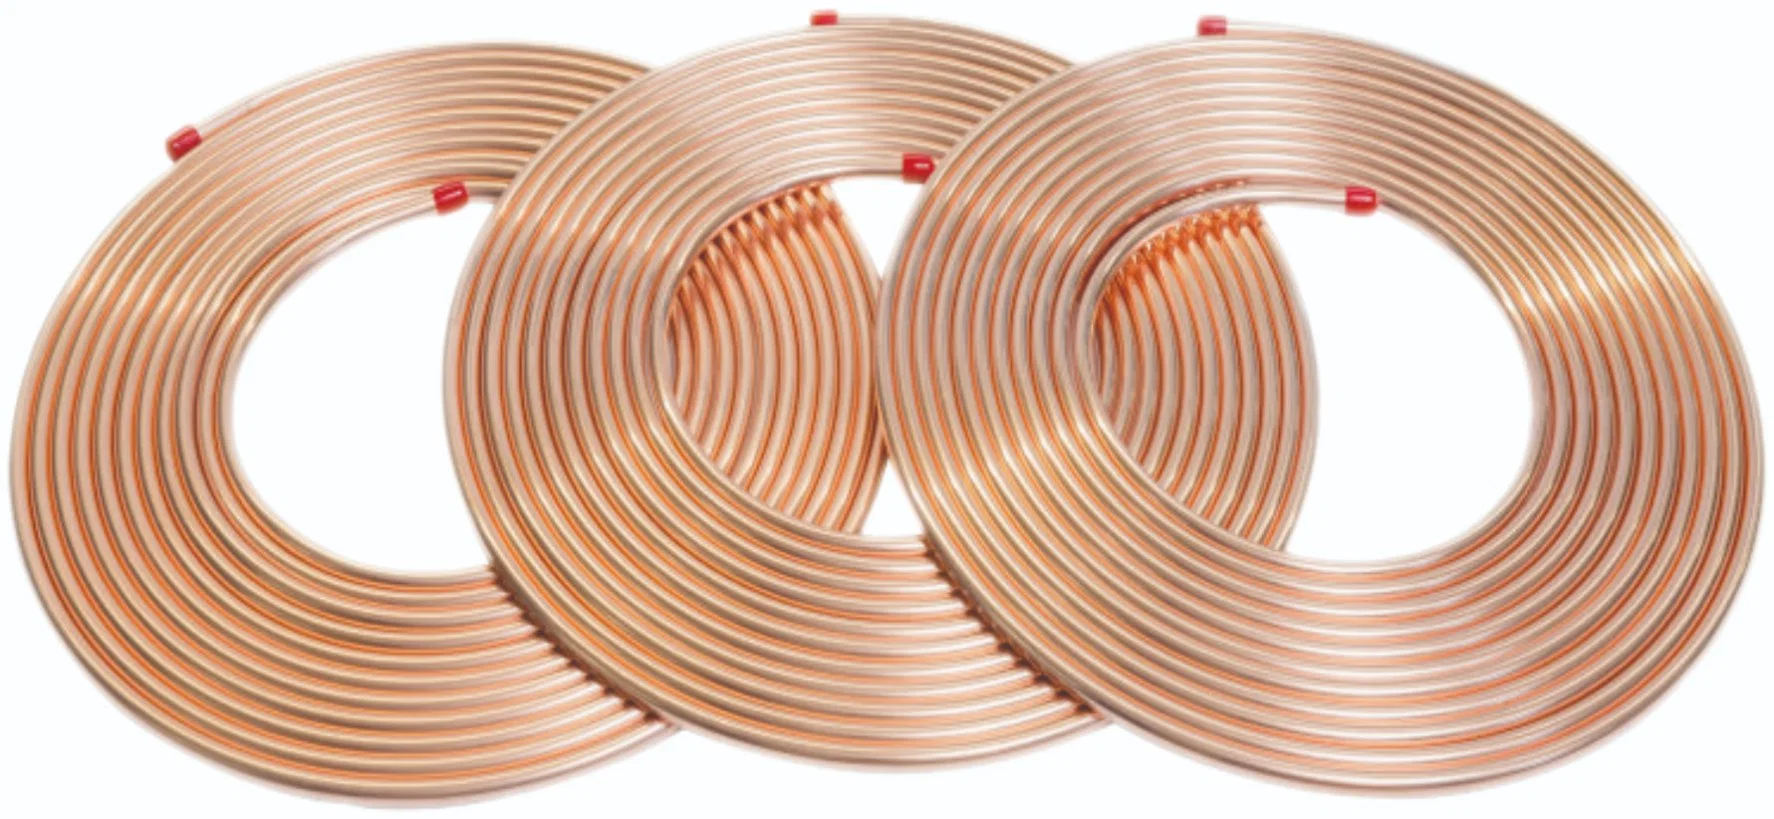 Sonda de cobre de bobina de pancake de cobre puro ASTM B280 Para refrigeración